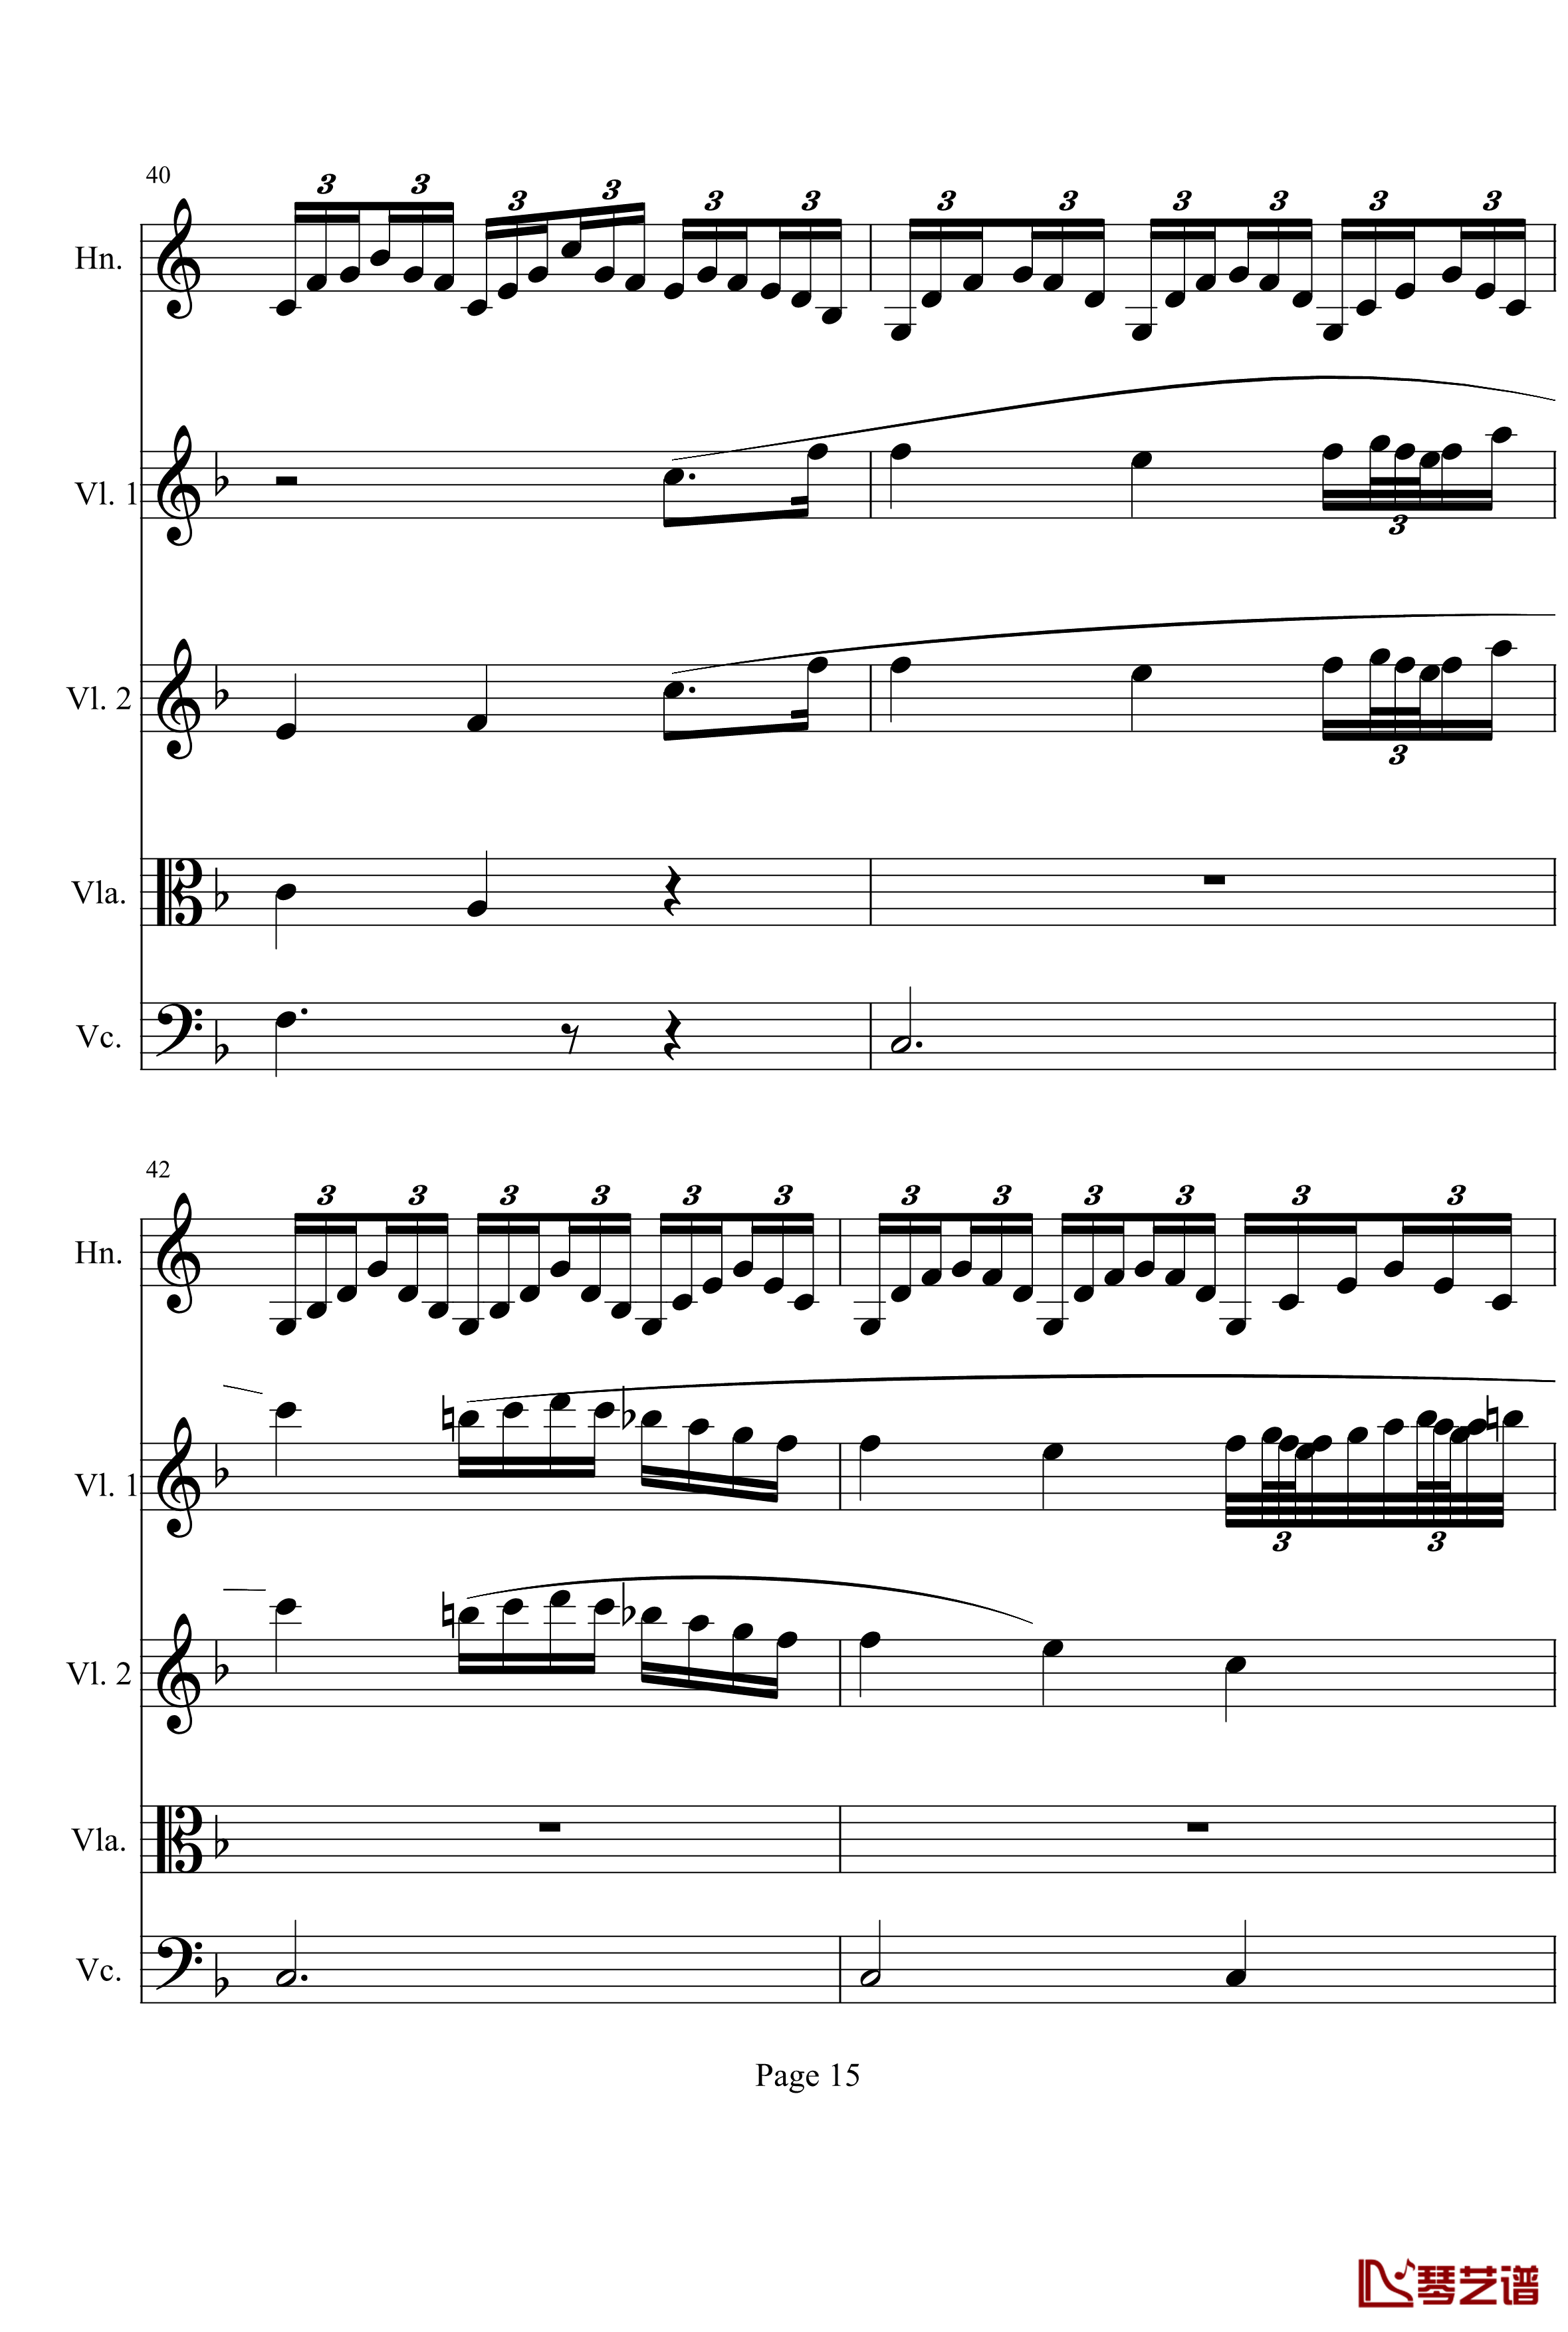 奏鸣曲之交响钢琴谱-第1首-Ⅱ-贝多芬-beethoven15